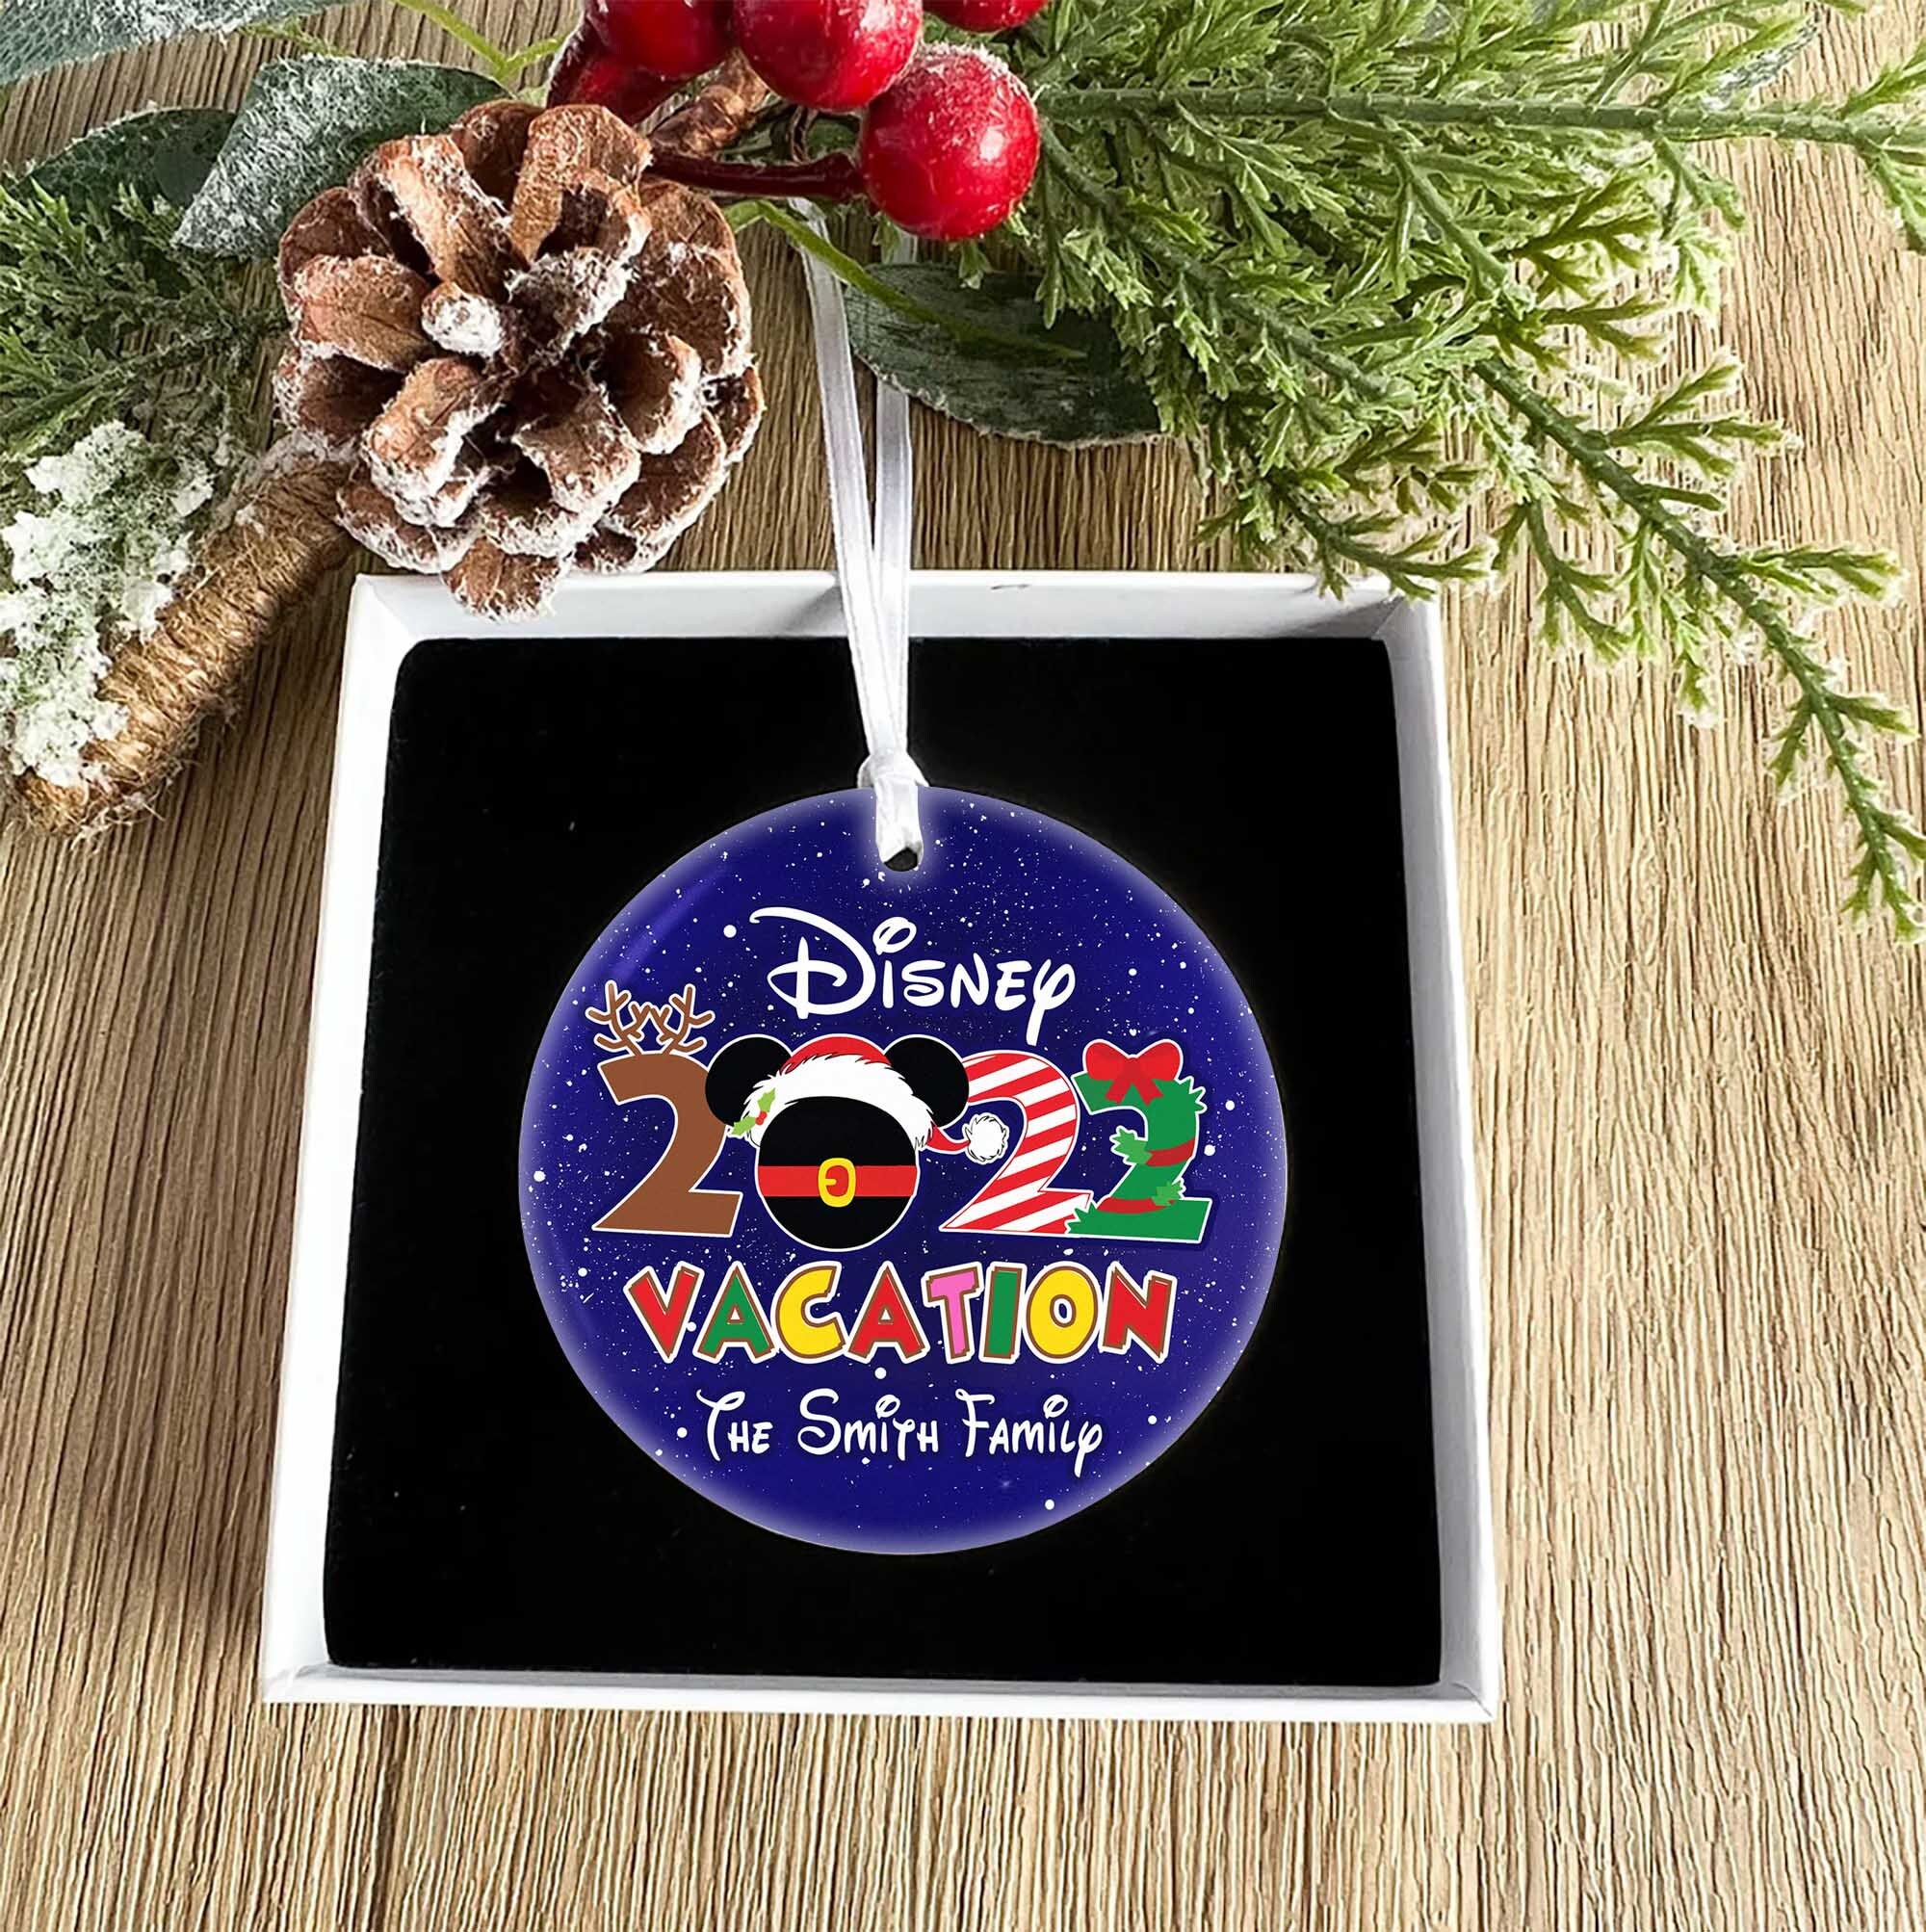 Disney Family vacations 2022 Ornament, Disney World Christmas Ornament, Disney Christmas